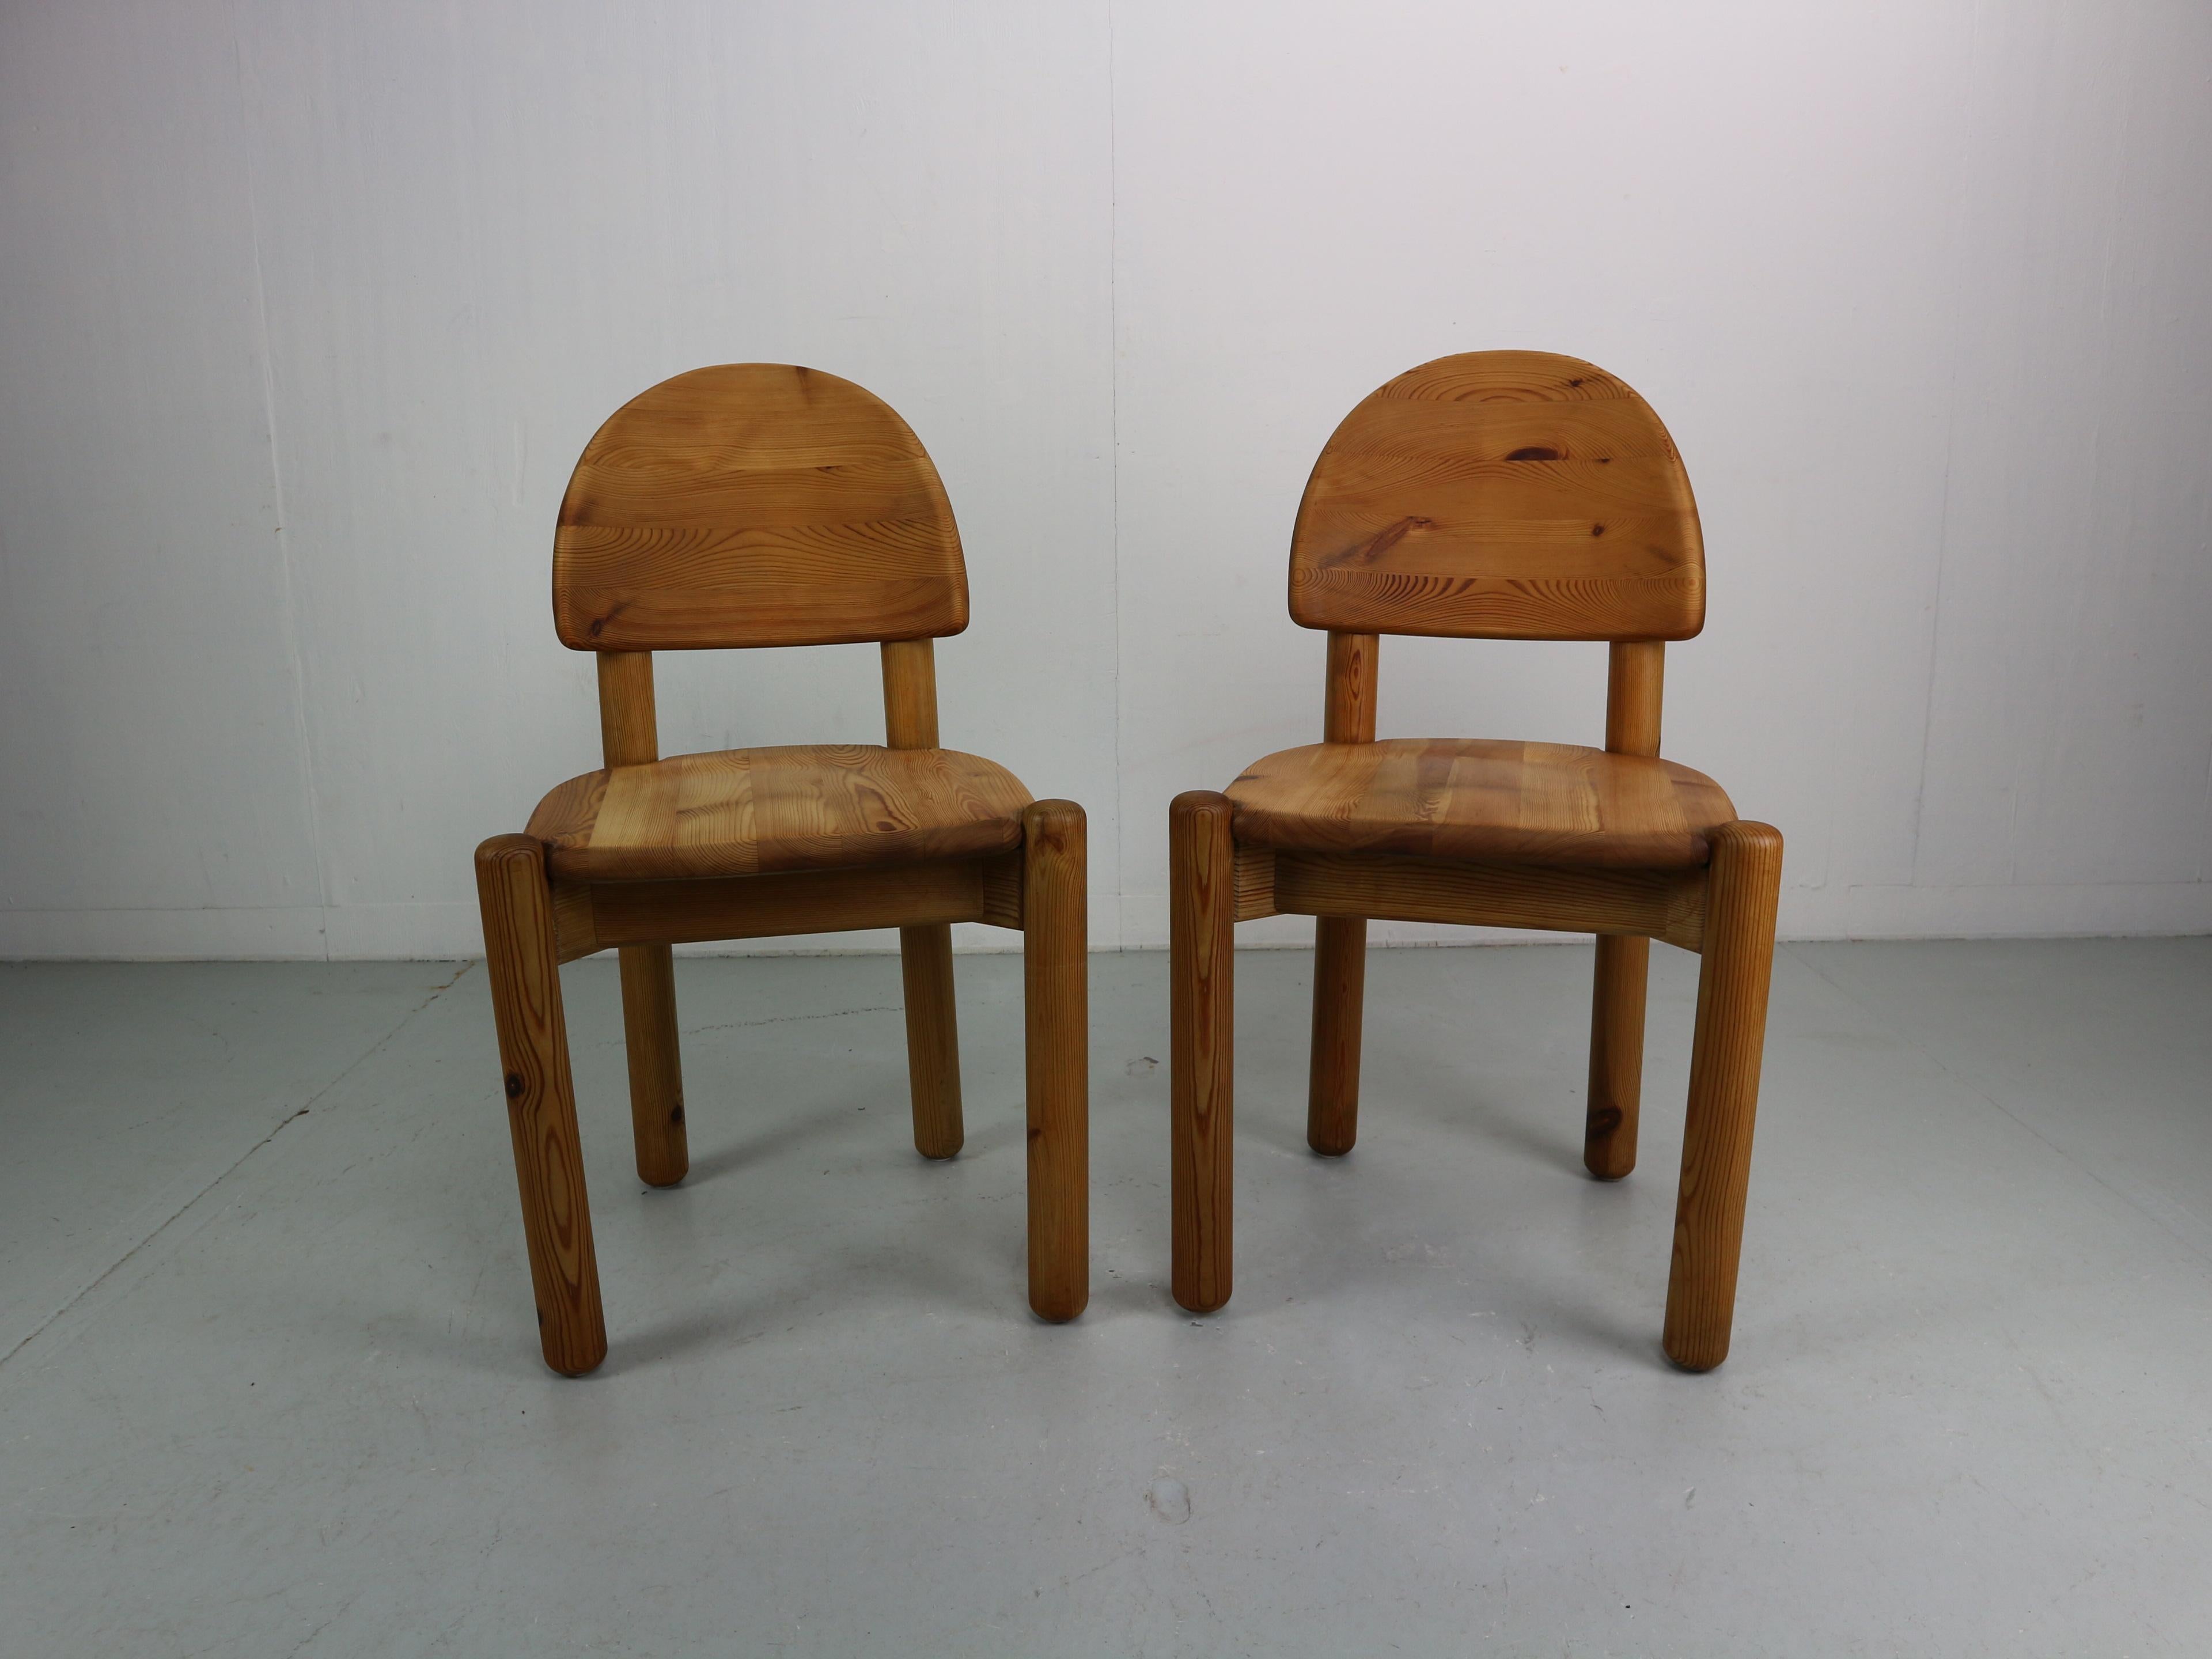 Ensemble de deux chaises en pin massif en état d'usage. Conçu par Rainer Daumiller et fabriqué par Hirtshals Savvaerk dans les années 1970. Les chaises ont une assise et un dossier sculptés qui leur donnent un aspect robuste et organique. Le bois de